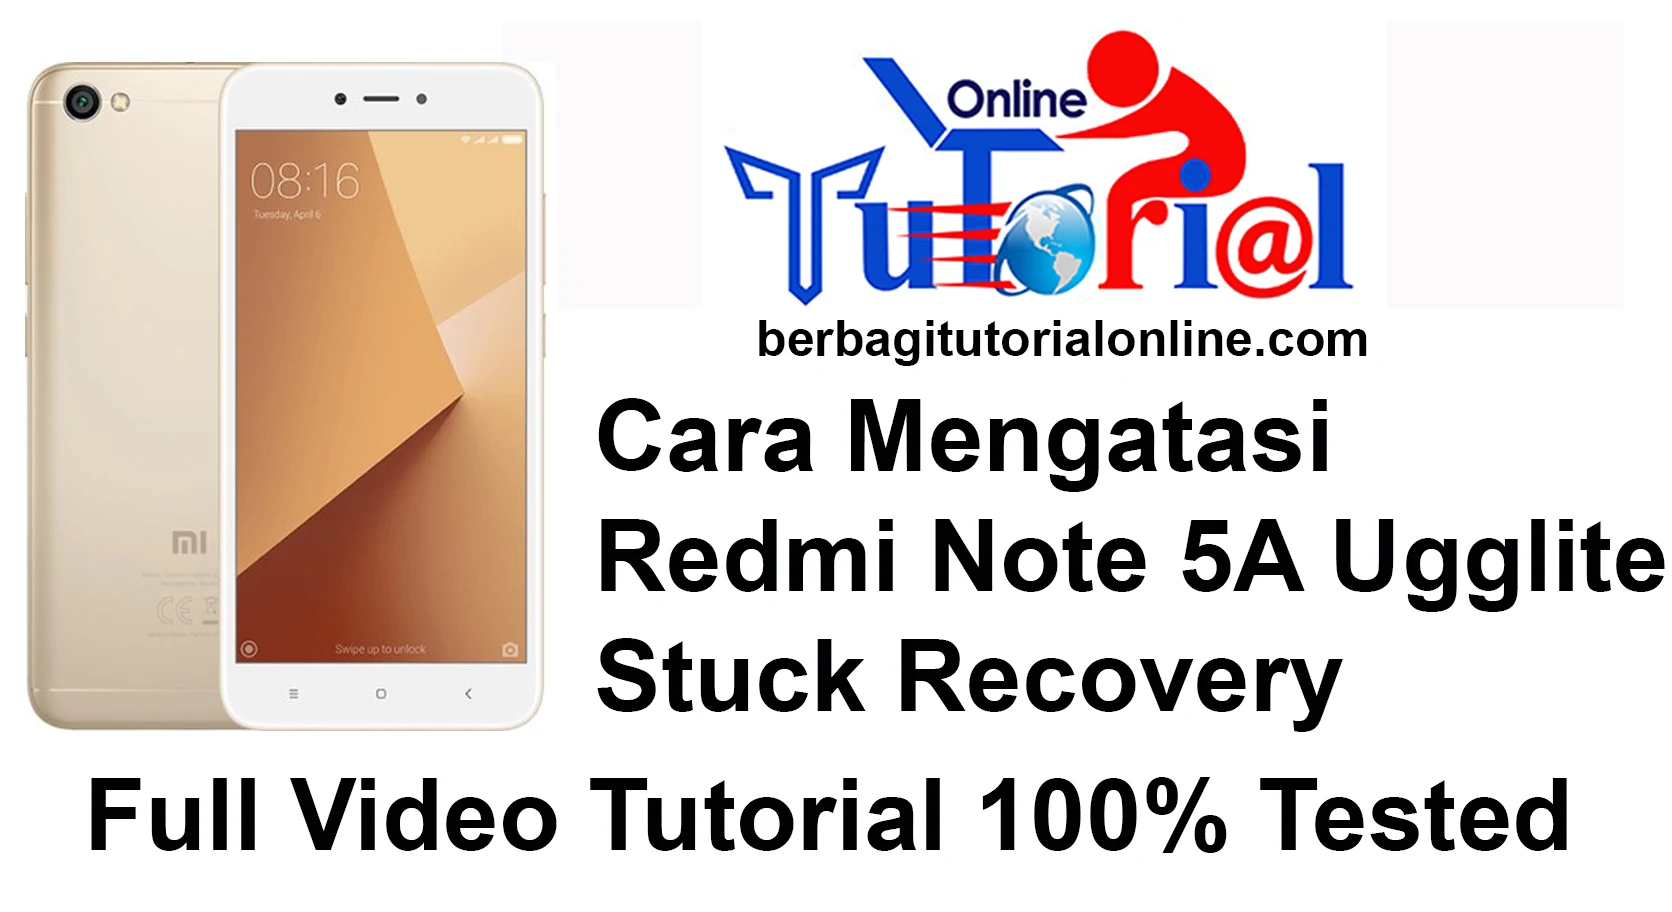 Redmi Note 5A Ugglite Stuck Recovery